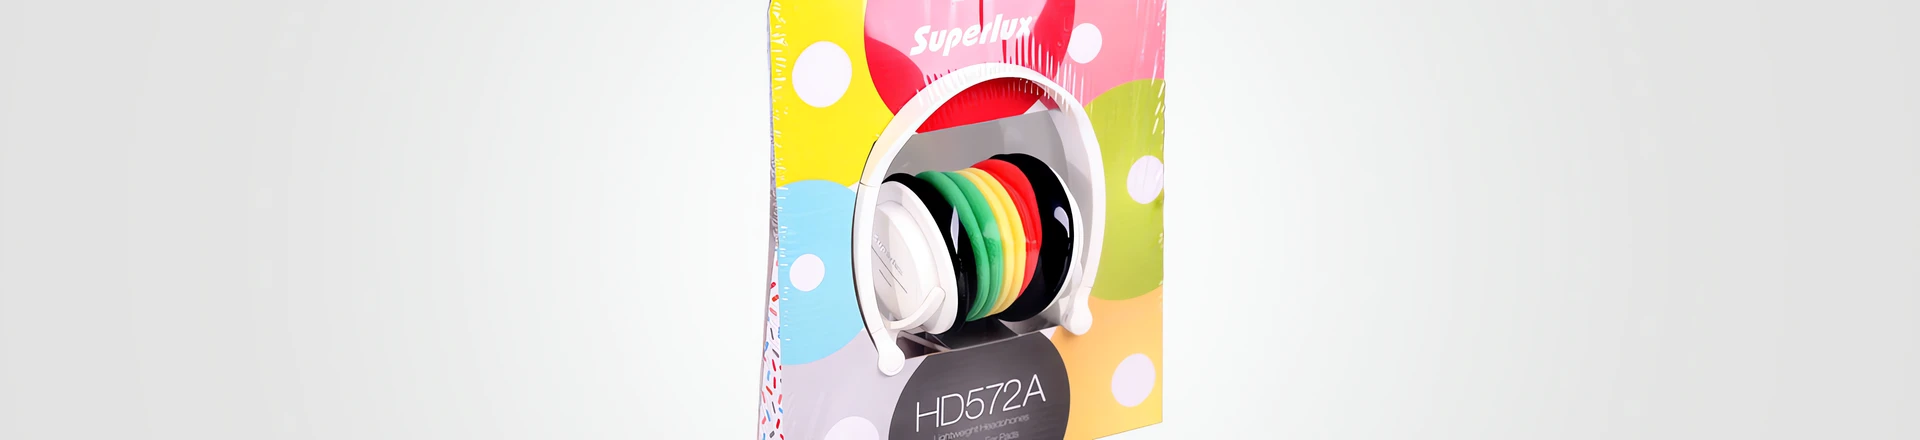 Superlux HD572A - Dopasuj słuchawki do swojego stylu